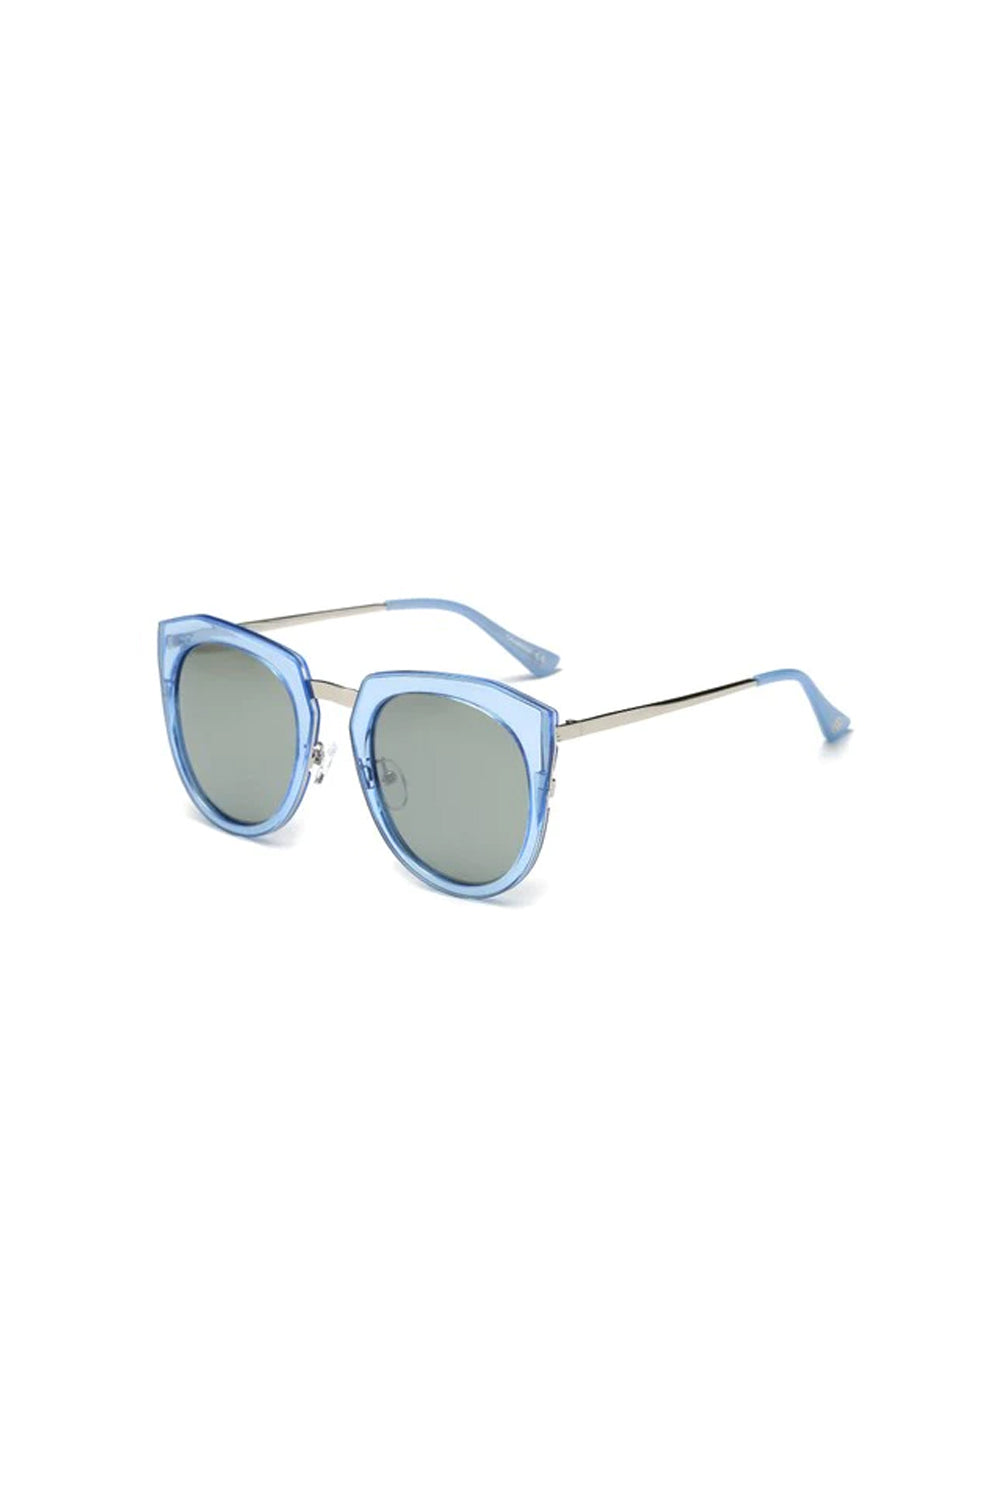 Women Oversize Cat Eye Fashion Sunglasses